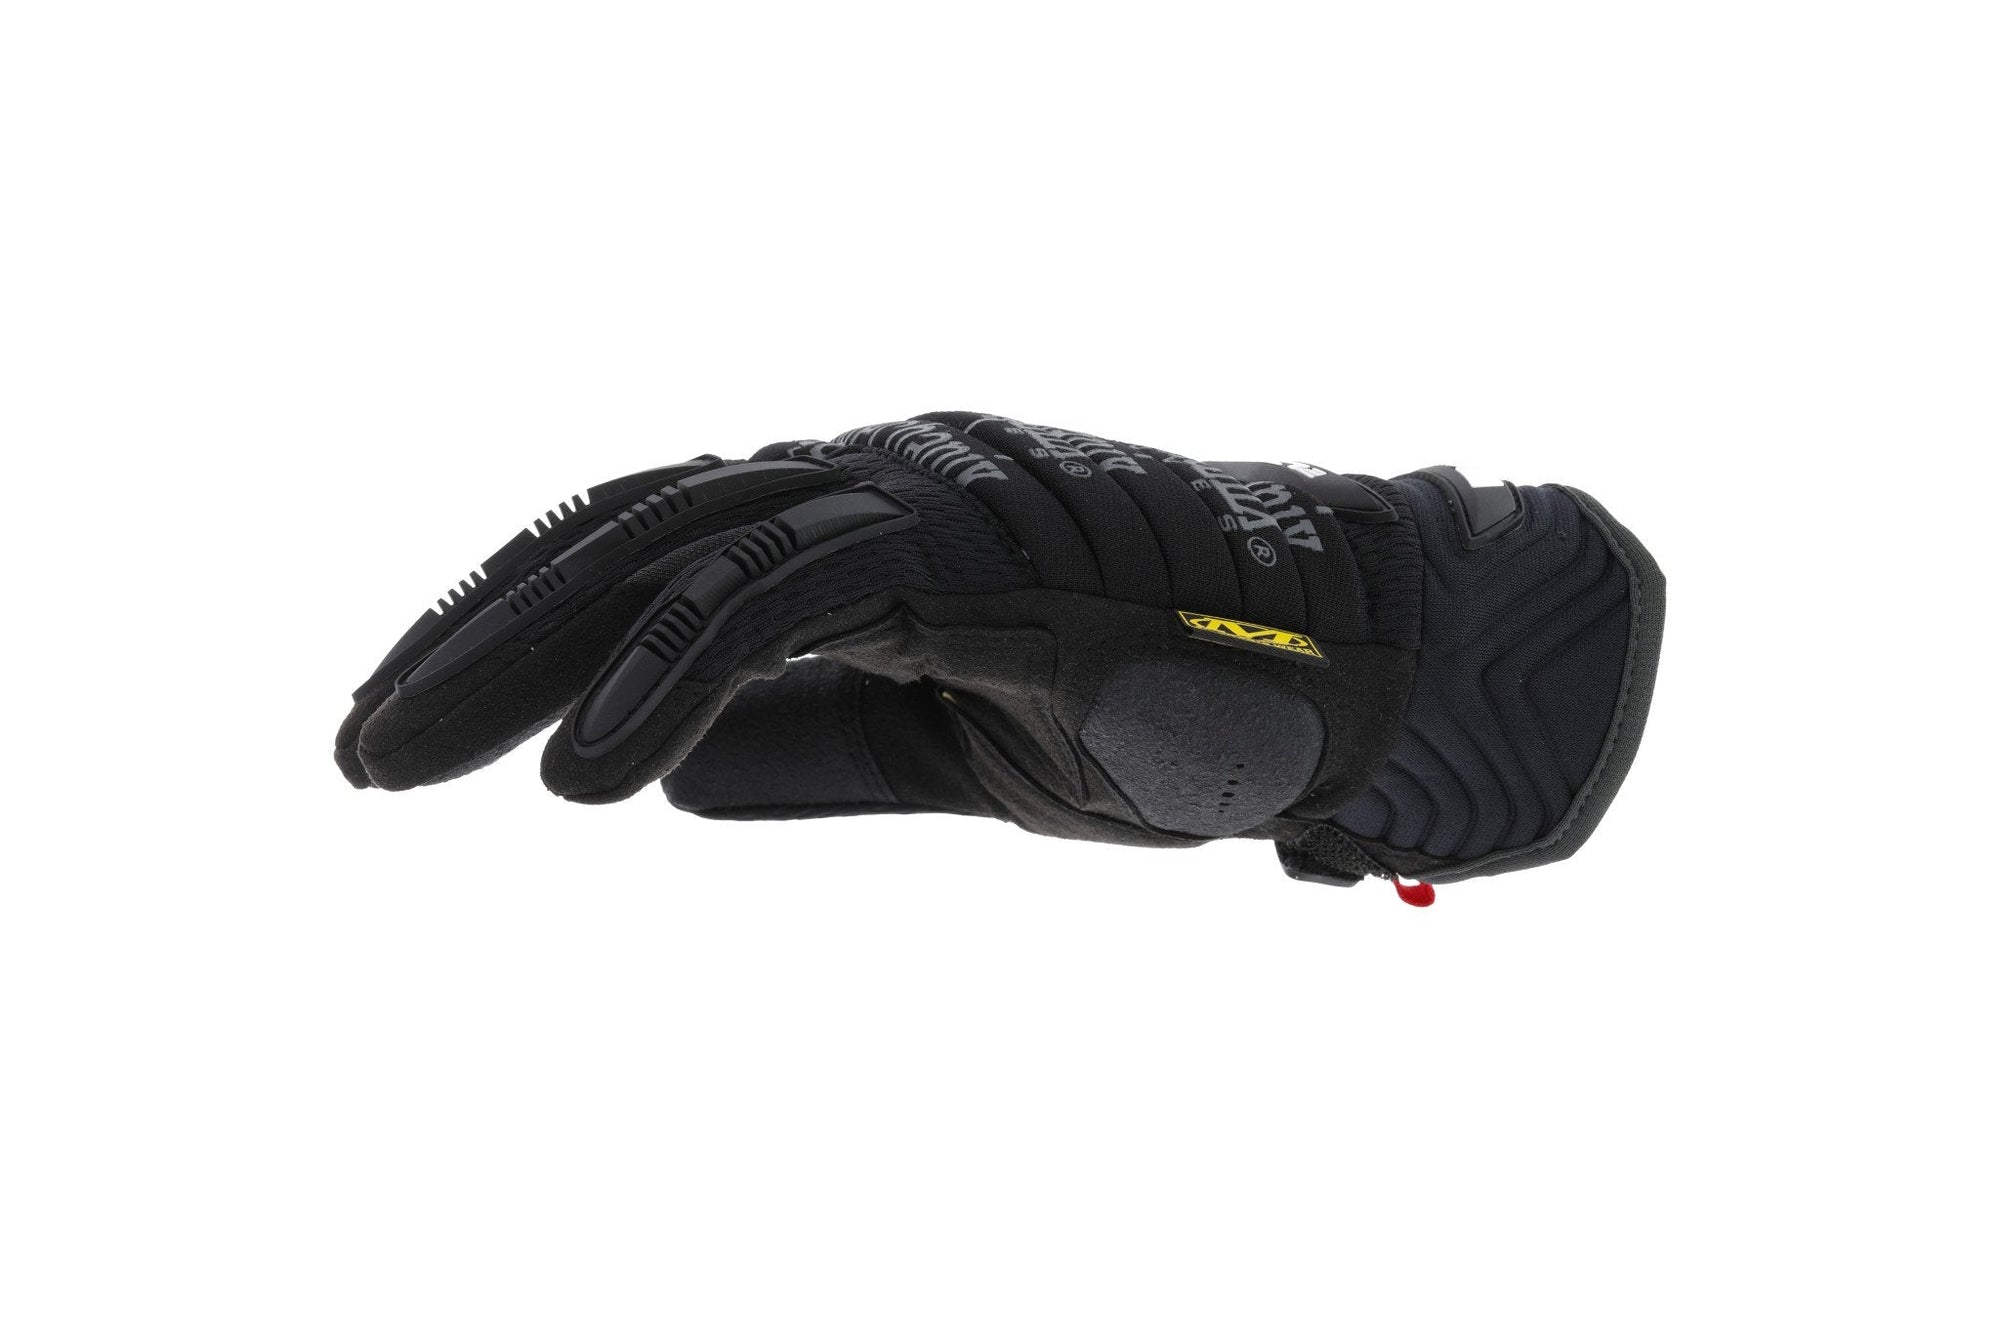 Mechanix Wear M-Pact 2 Heavy Duty Glove Black Gloves Mechanix Wear Tactical Gear Supplier Tactical Distributors Australia